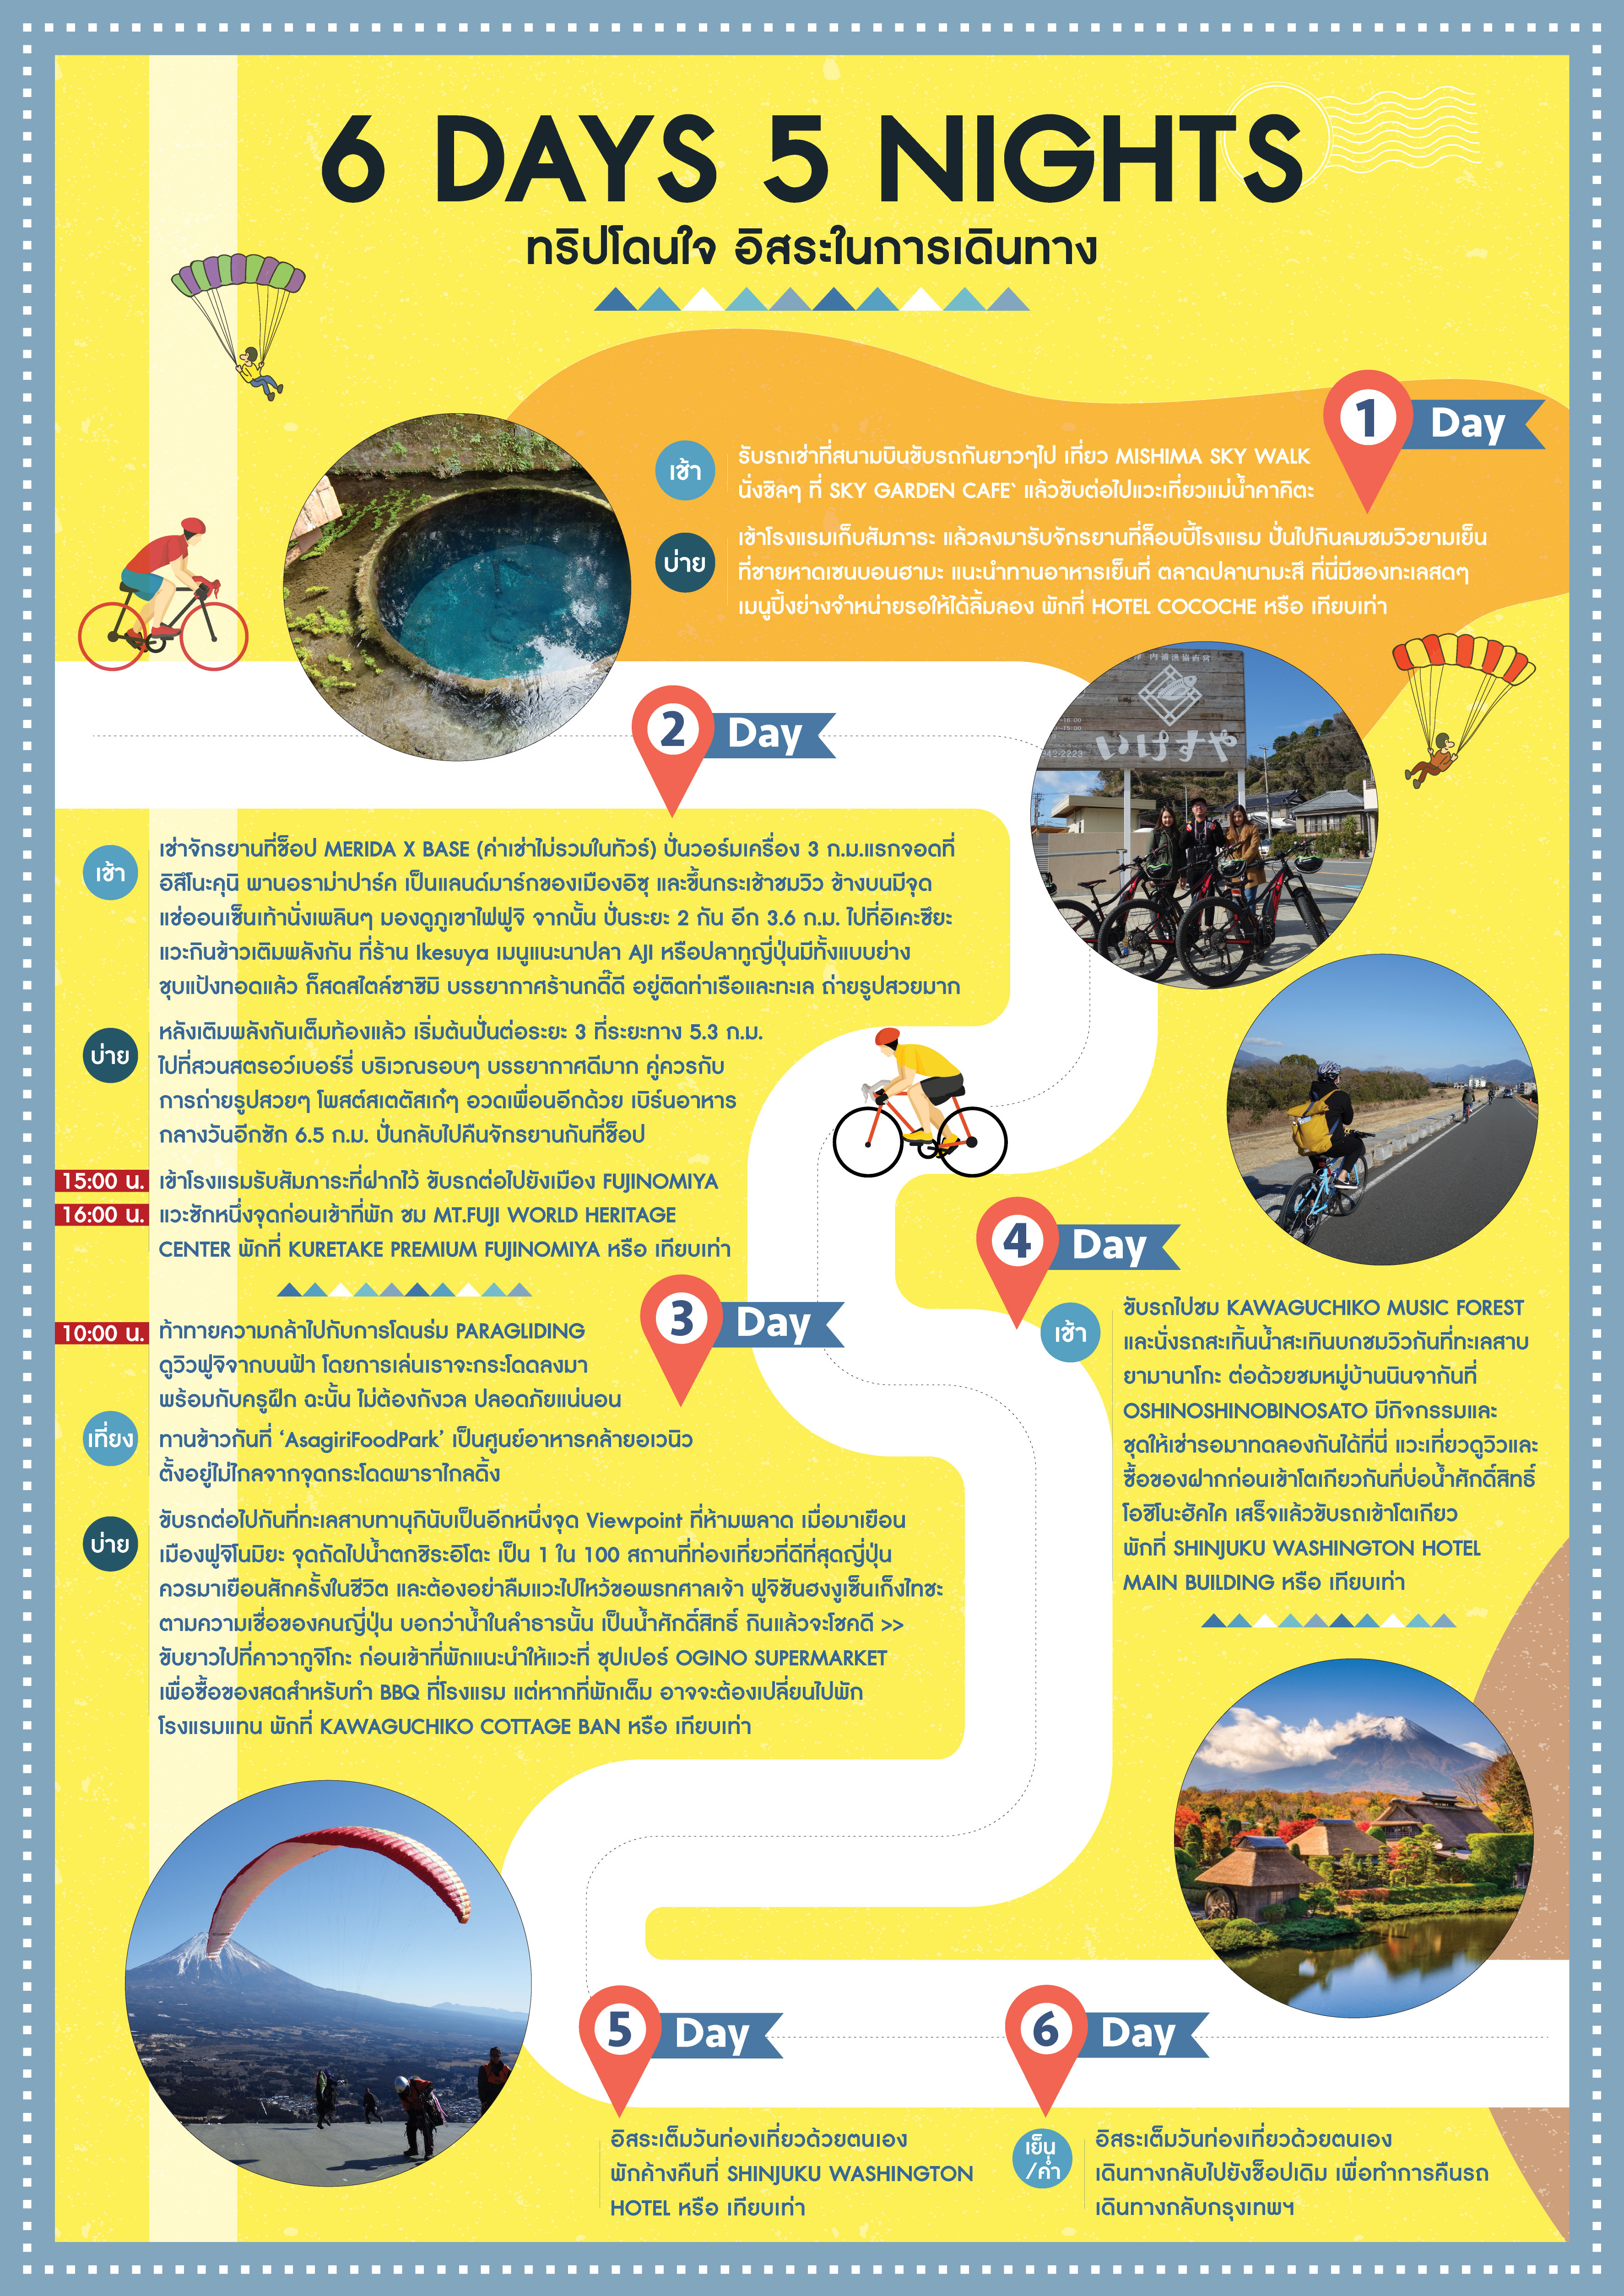 The Adventure Trip & Bike, กระโดดร่มที่ฟูจิ, 5 วัน 4 คืน, Japan, ญี่ปุ่น, เที่ยวญี่ปุ่น, โปรราคาถูก, แนะนำทริป